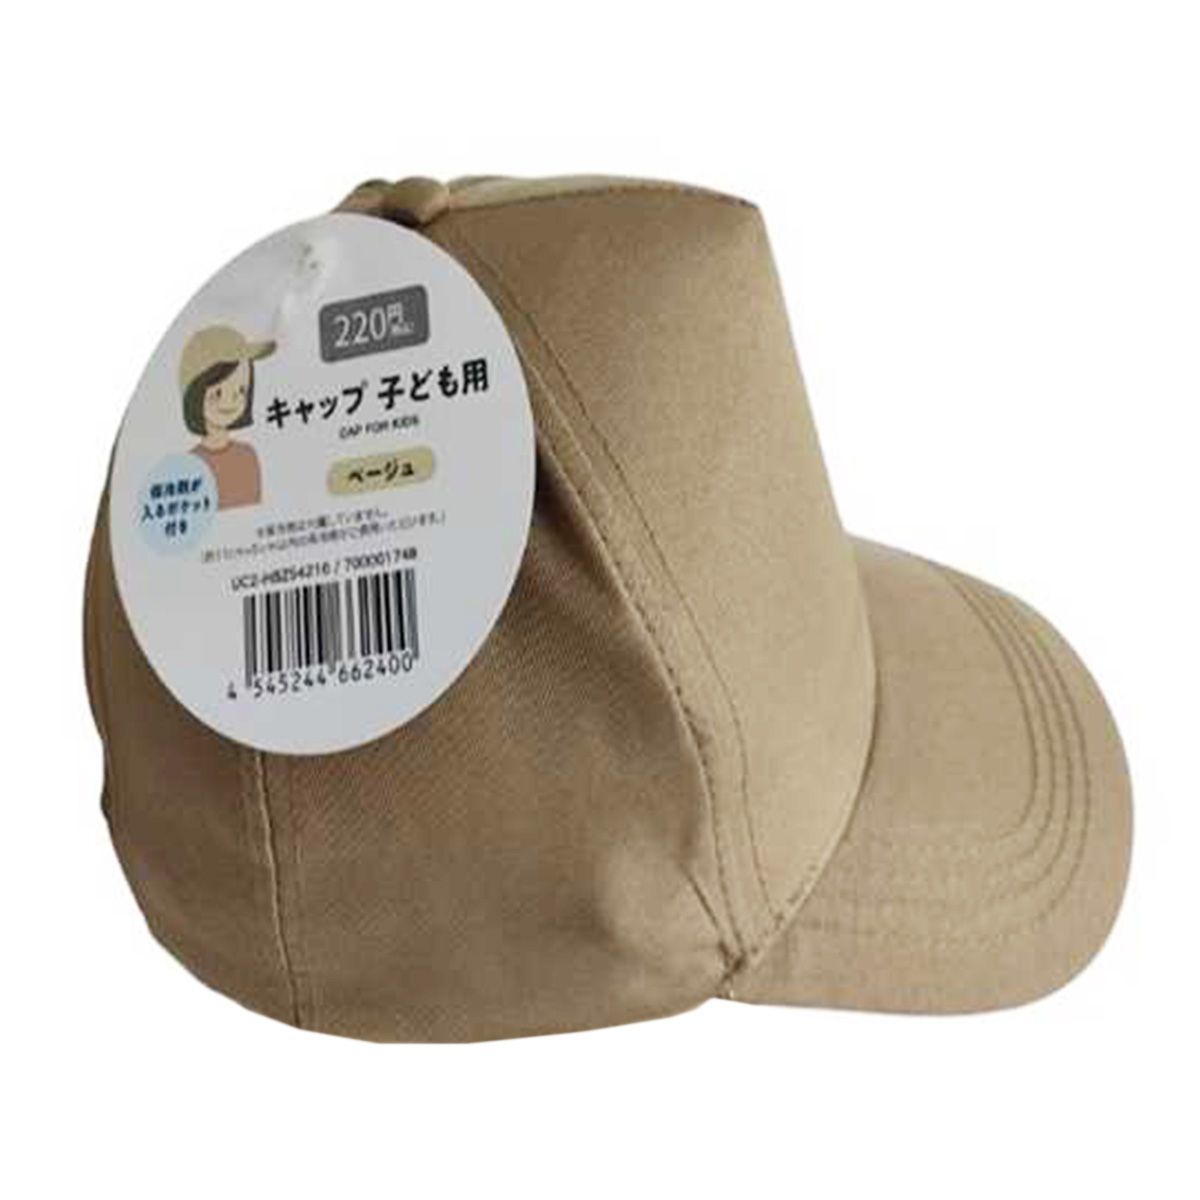 帽子 キャップ 保冷剤ポケット付きキャップ 子ども用 ベージュ 365570